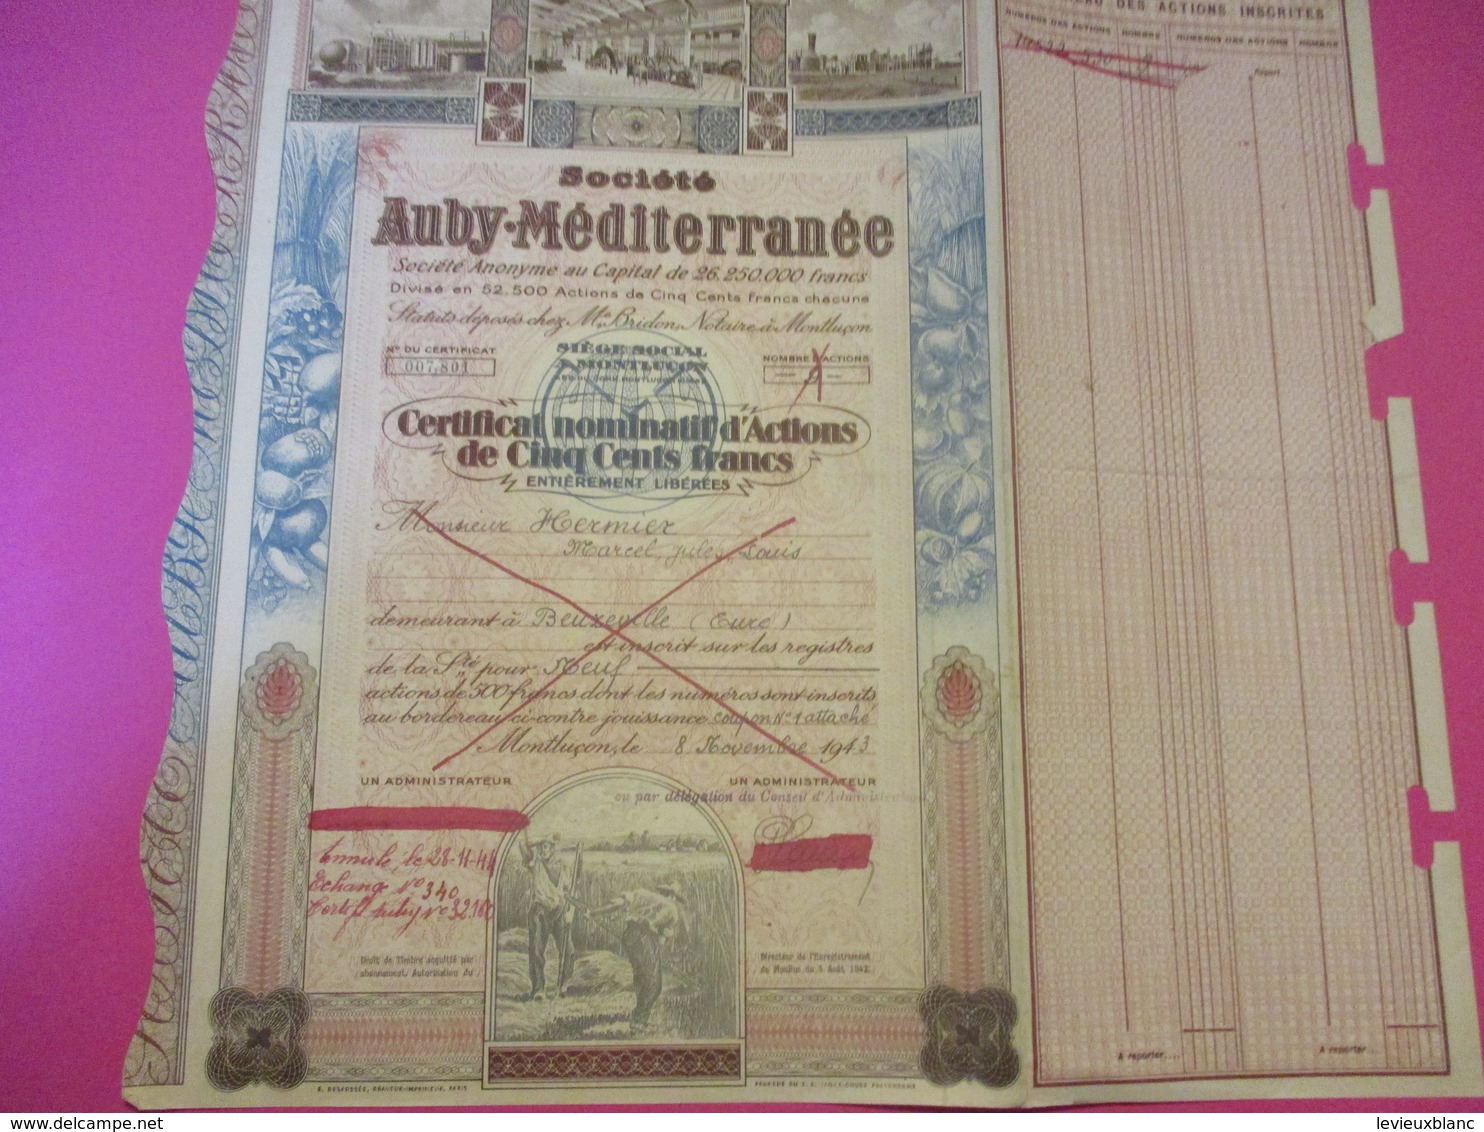 Certificat Nominatif D'Actions De 500 Francs Entiérement Libérées/Sté AUBY-MEDITERRANEE/MONTLUçON/ /1943       ACT209 - Agriculture